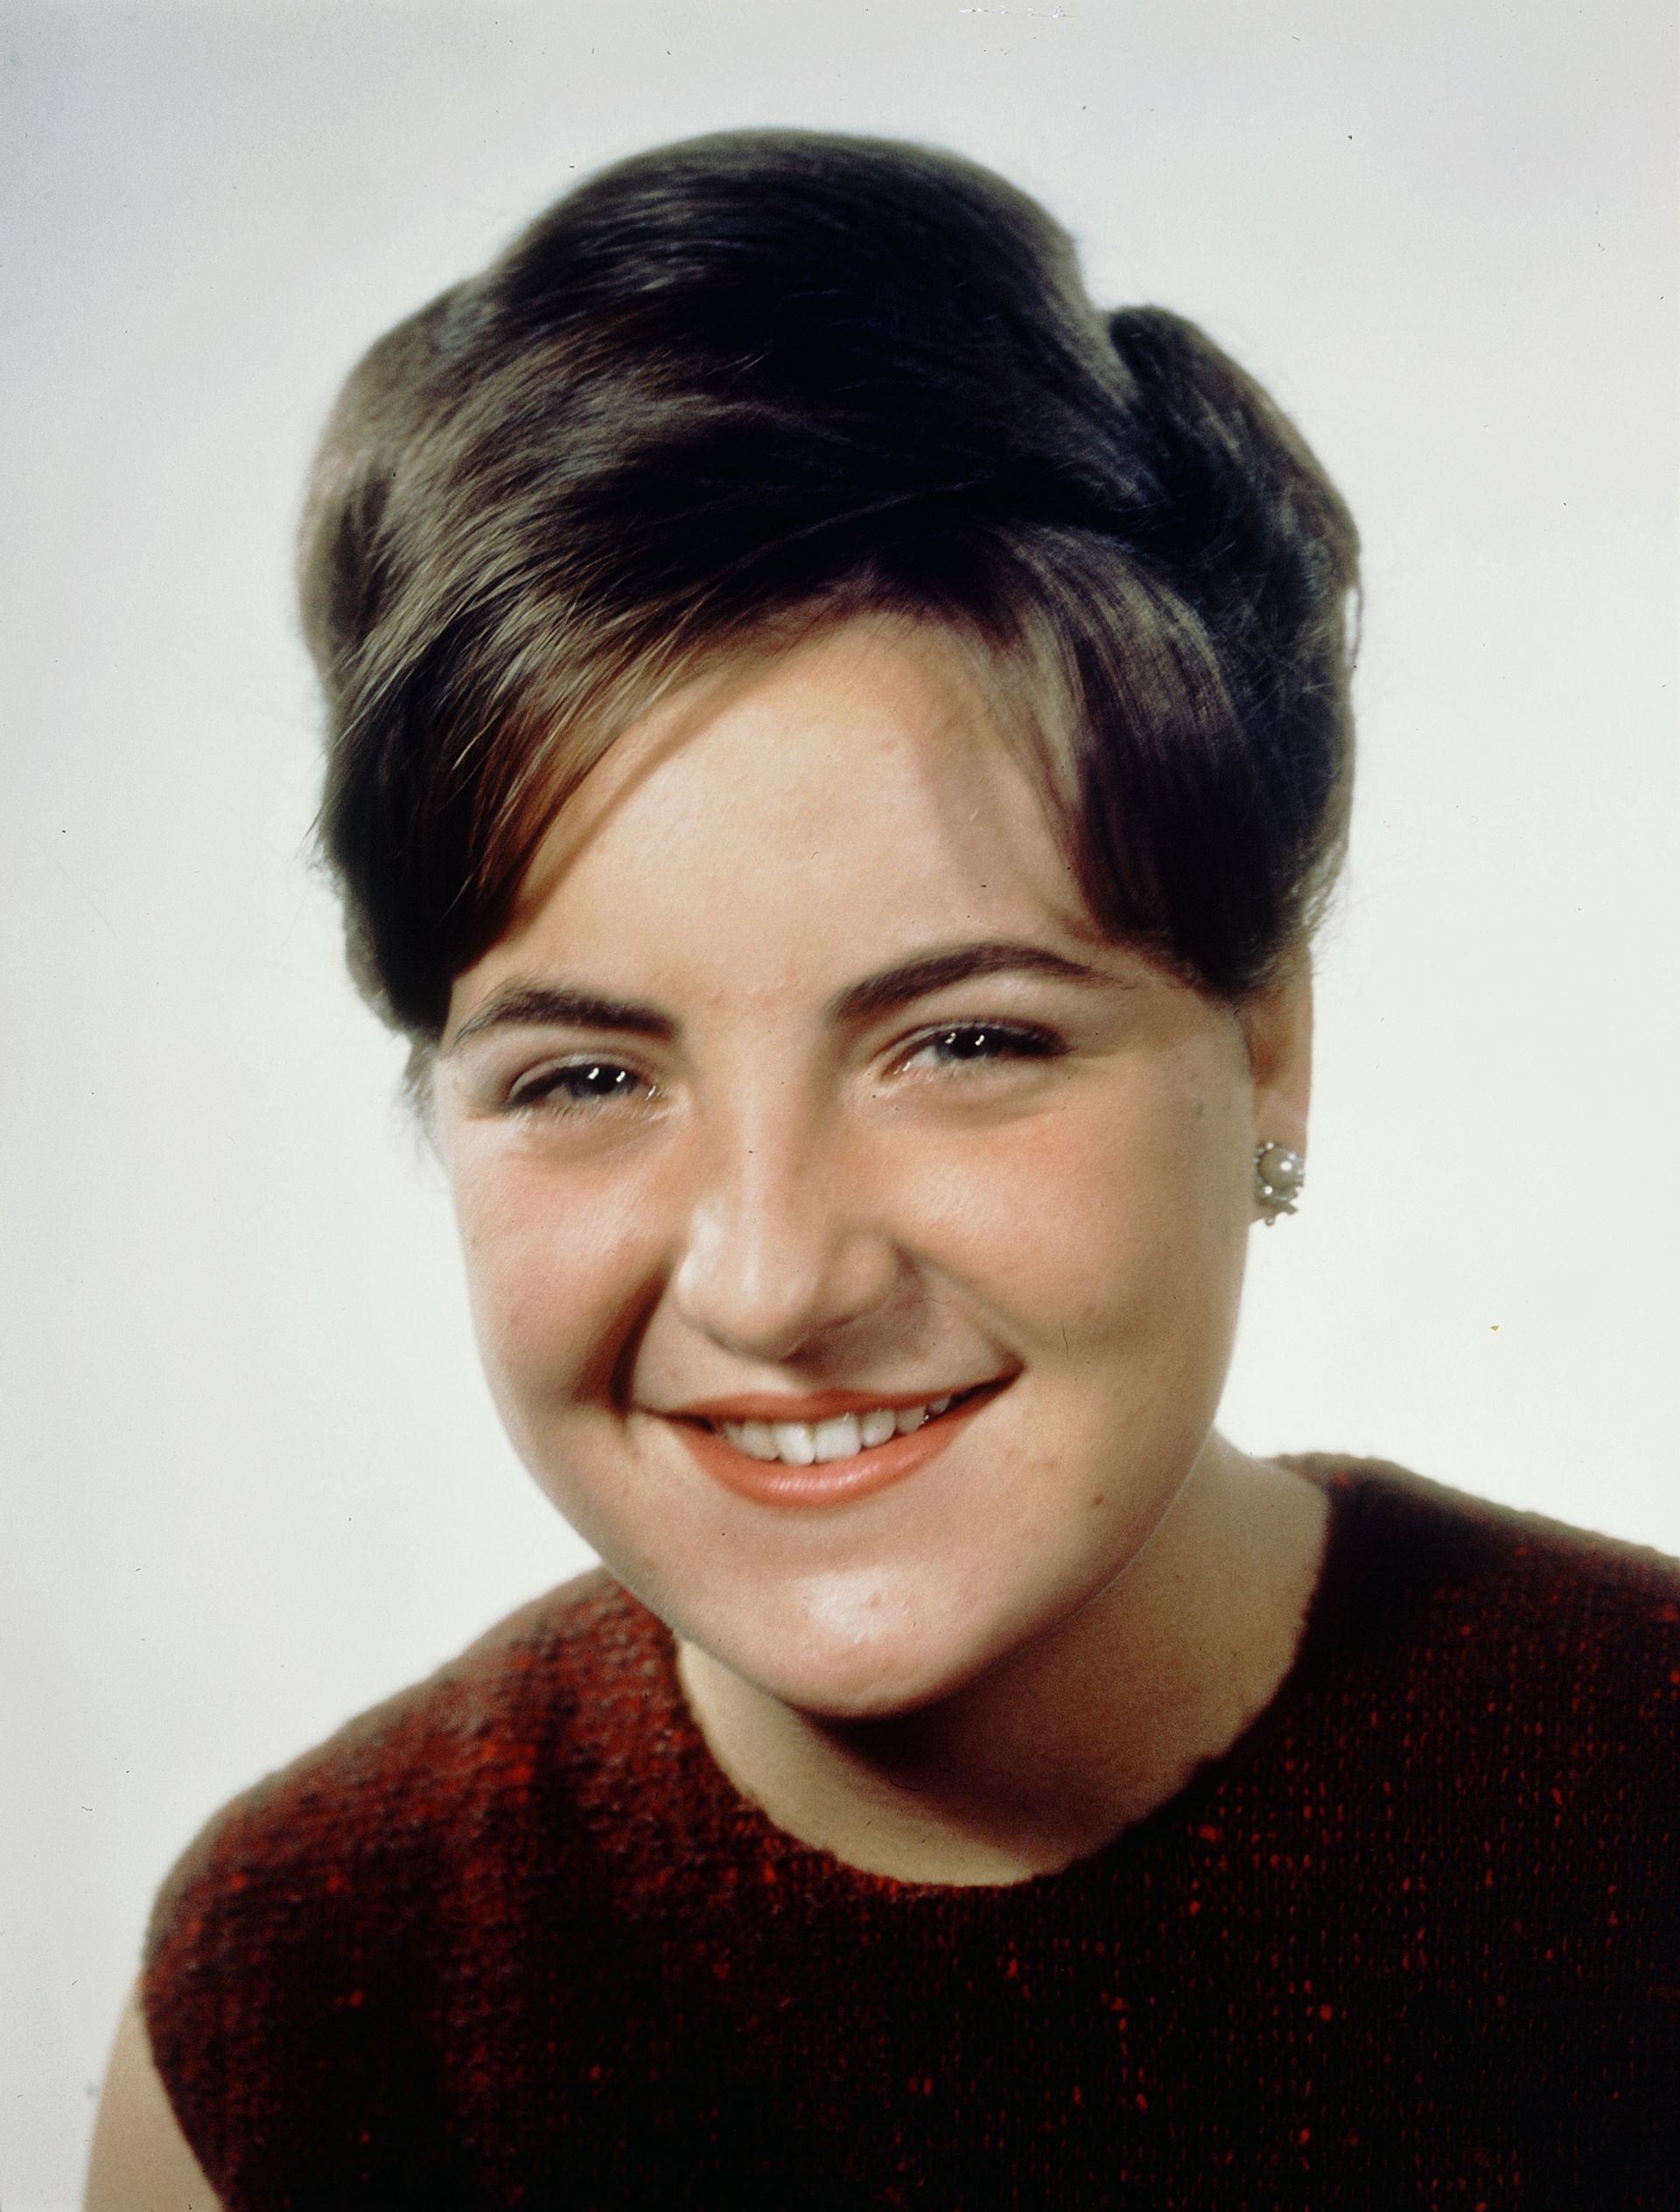 1964: een vrolijke kleurenfoto van prinses Margriet. Hier is zij 21 jaar oud.